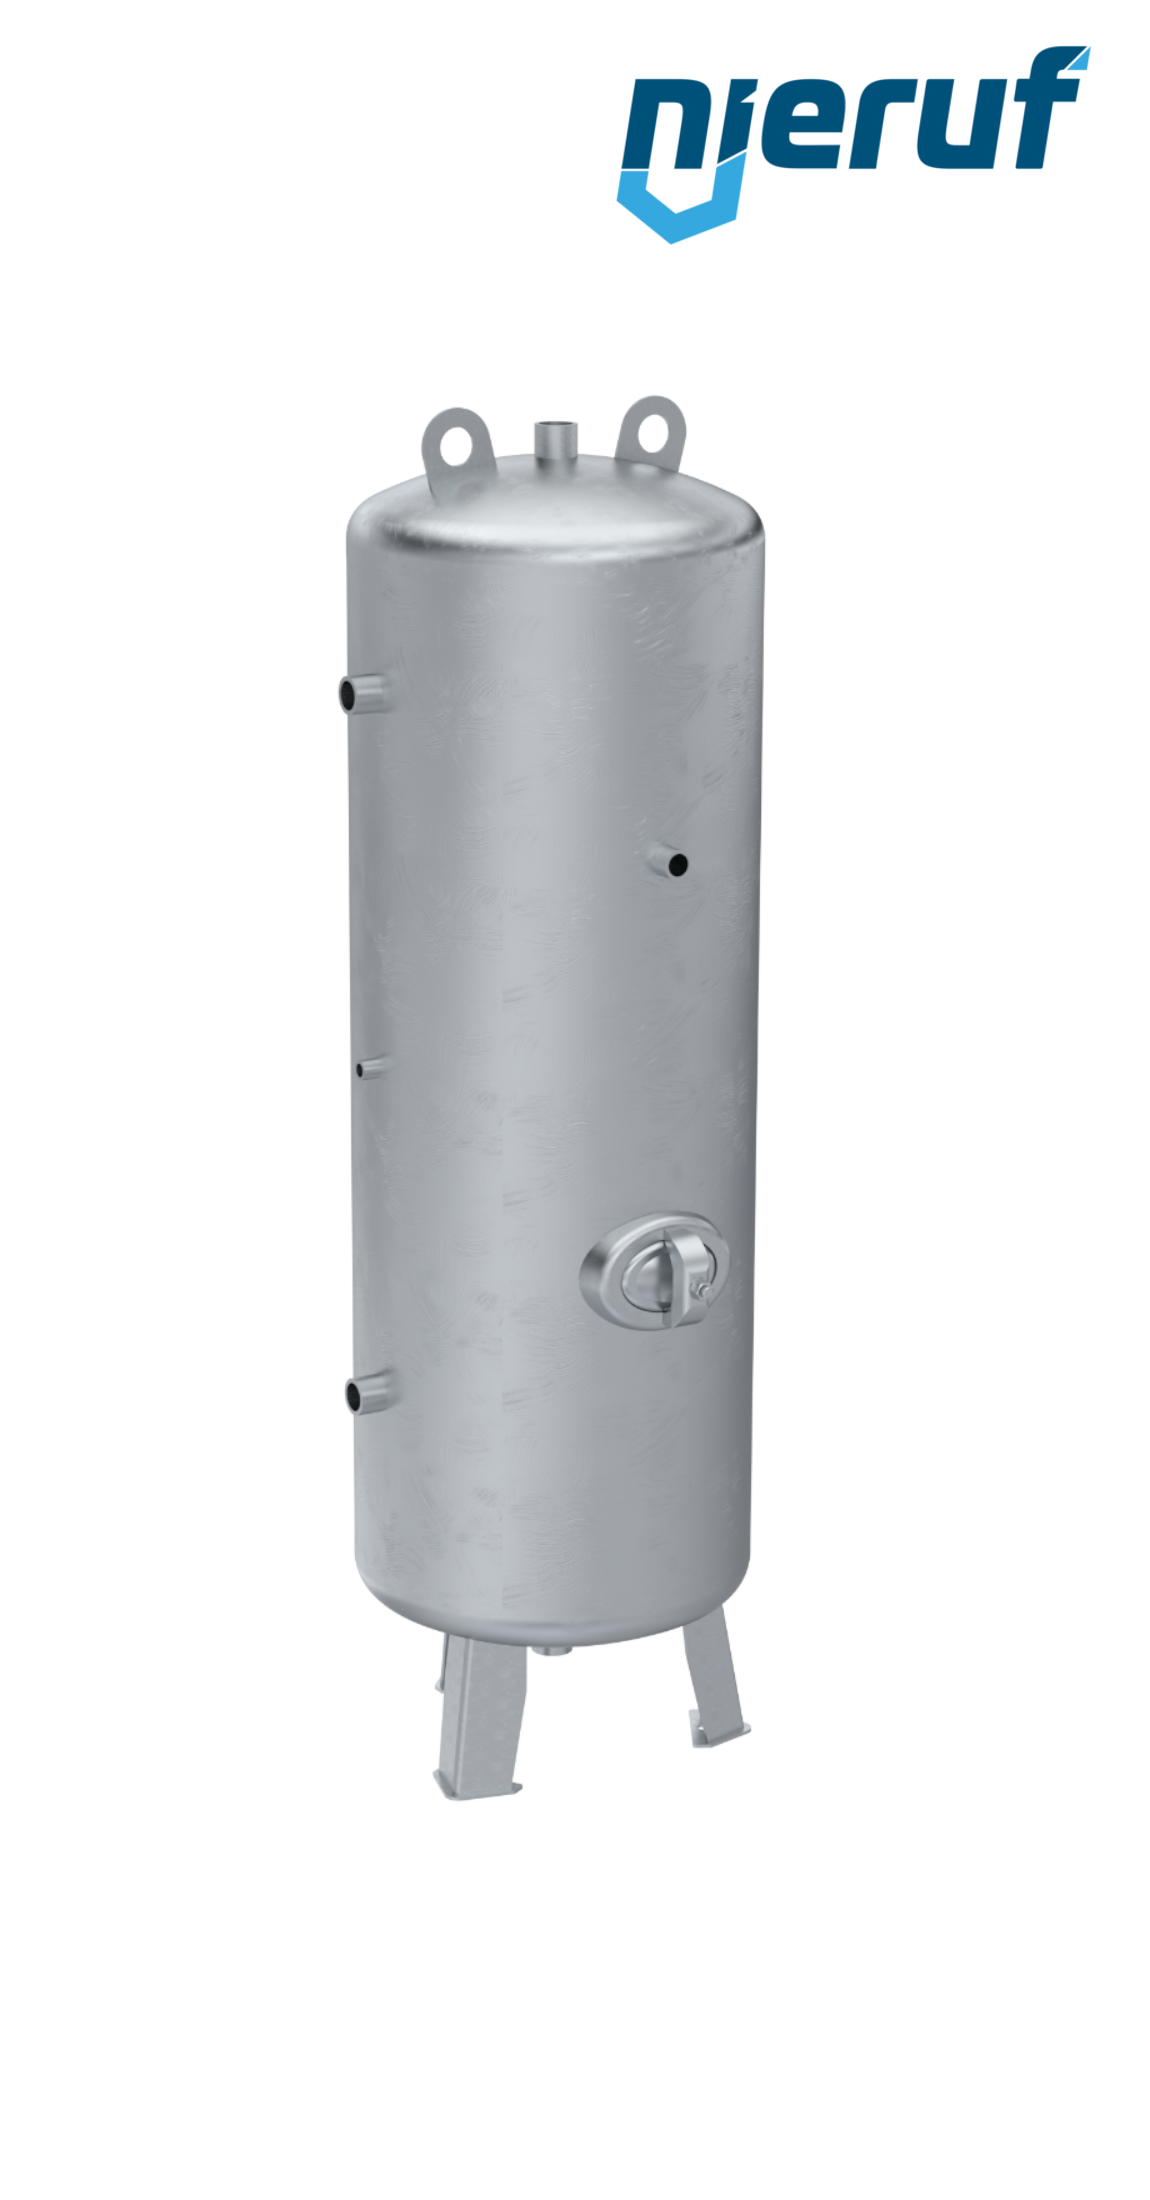 Serbatoi per alta pressione verticale BE02 350 litri, 0-36 bar, acciaio zincato